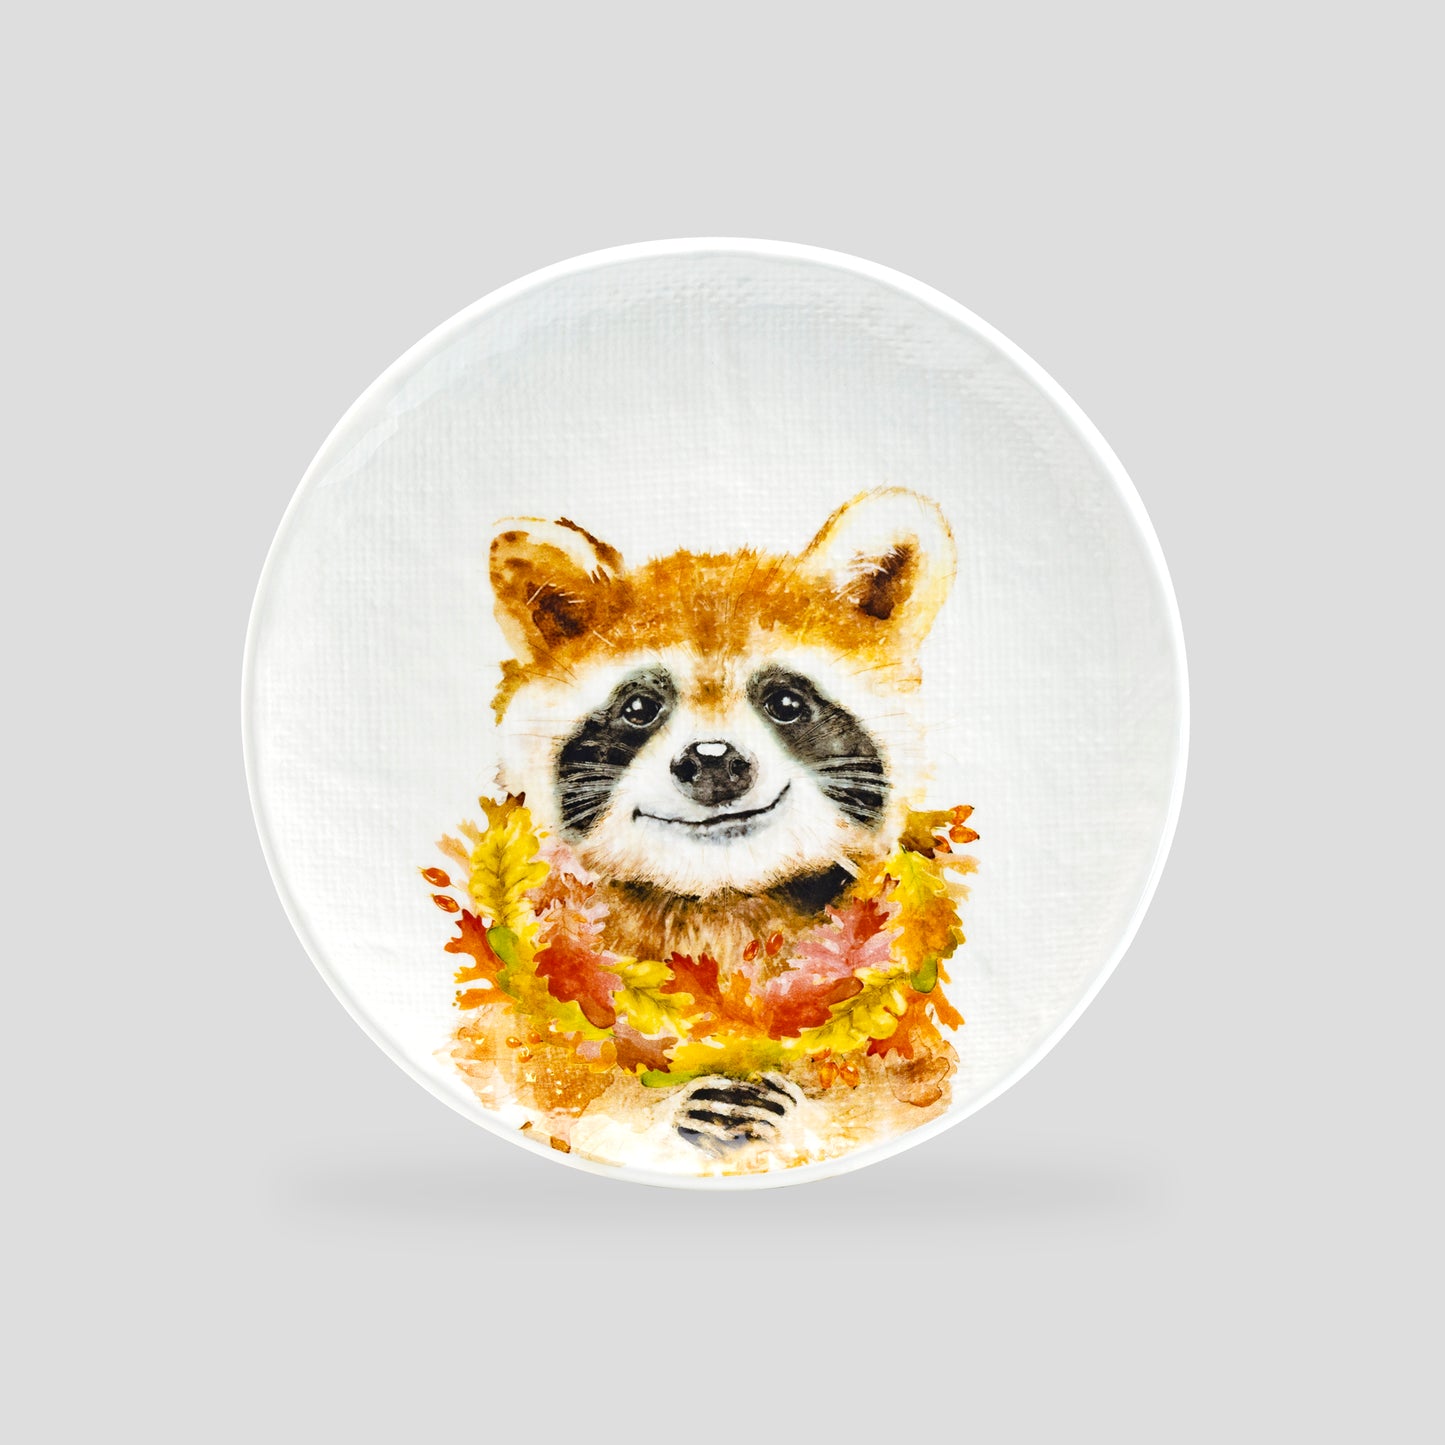 Potter's Studio 8.5" Happy Raccoon Salad / Dessert Plate